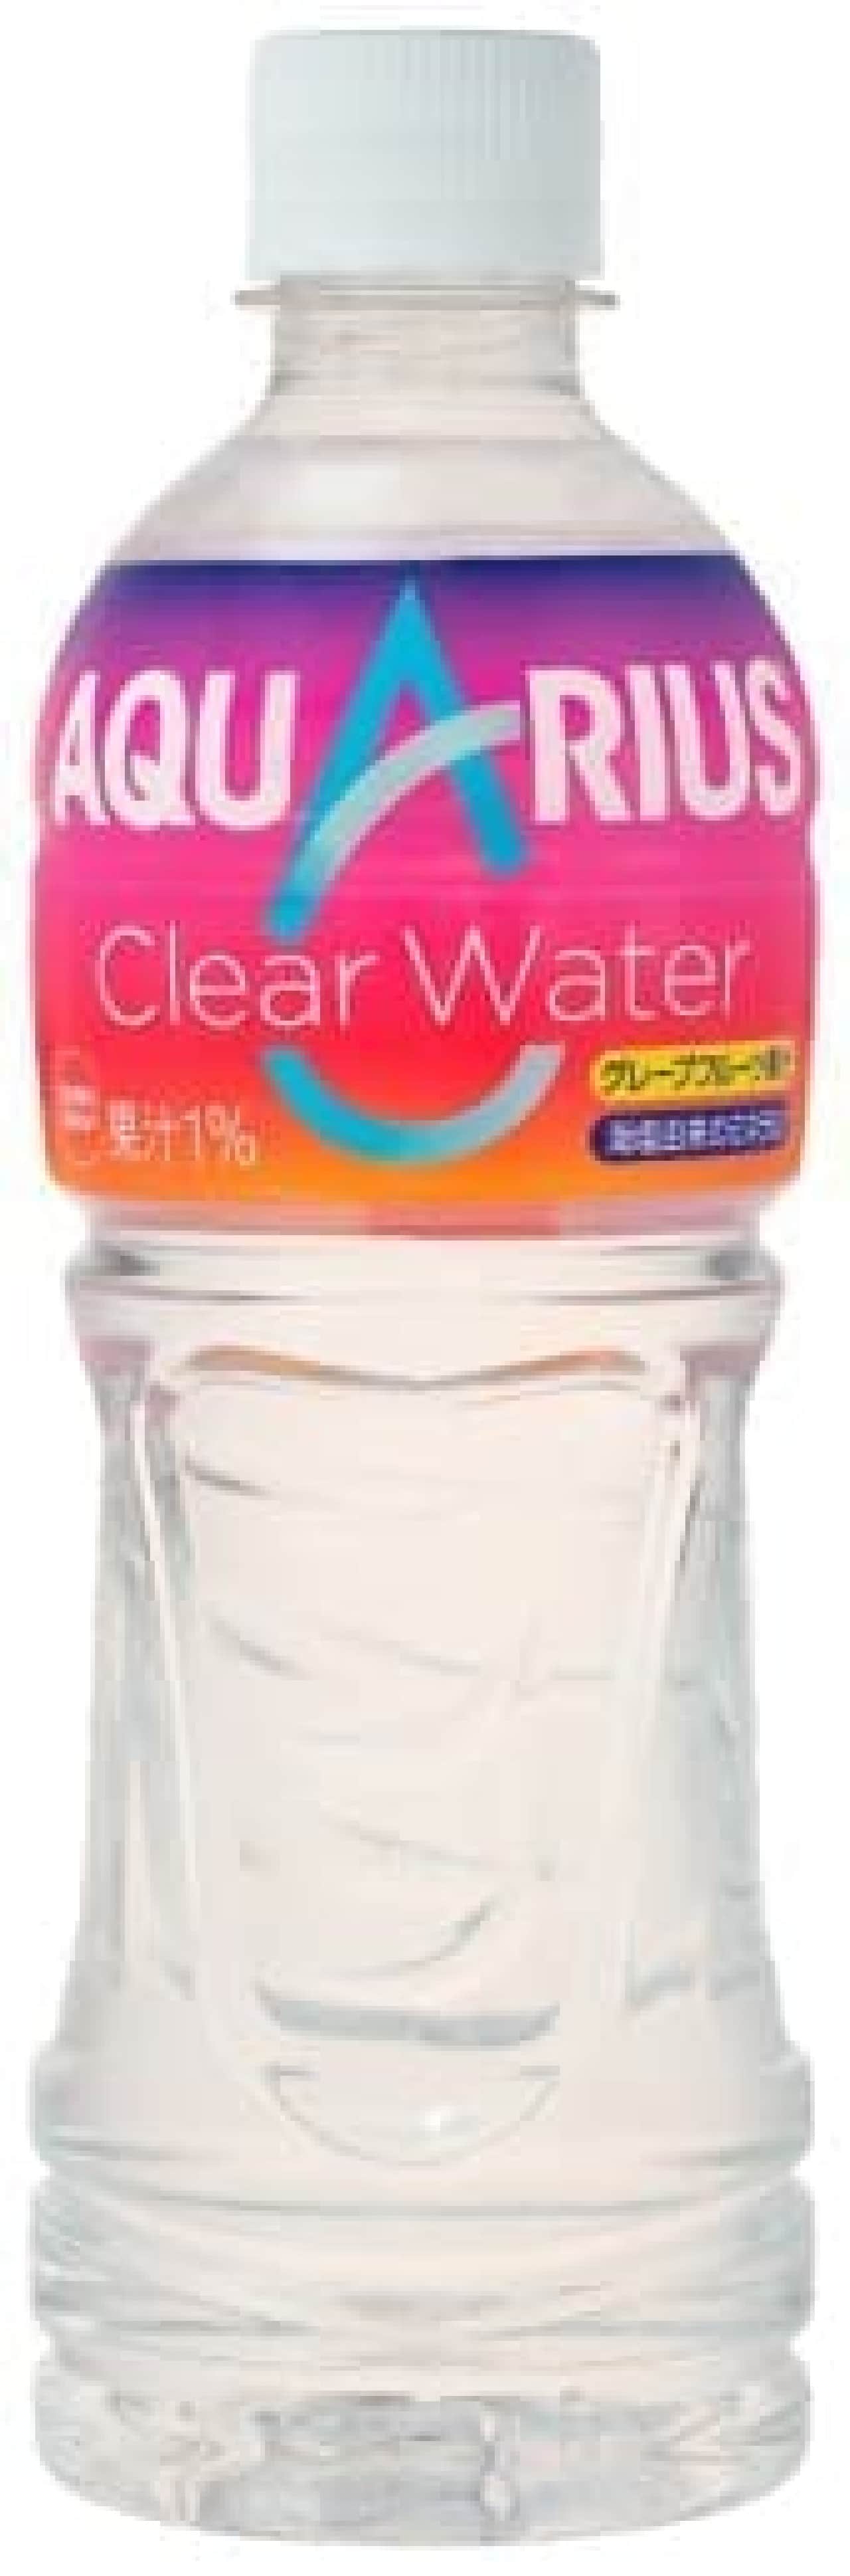 Coca-Cola system "Aquarius Clear Water"